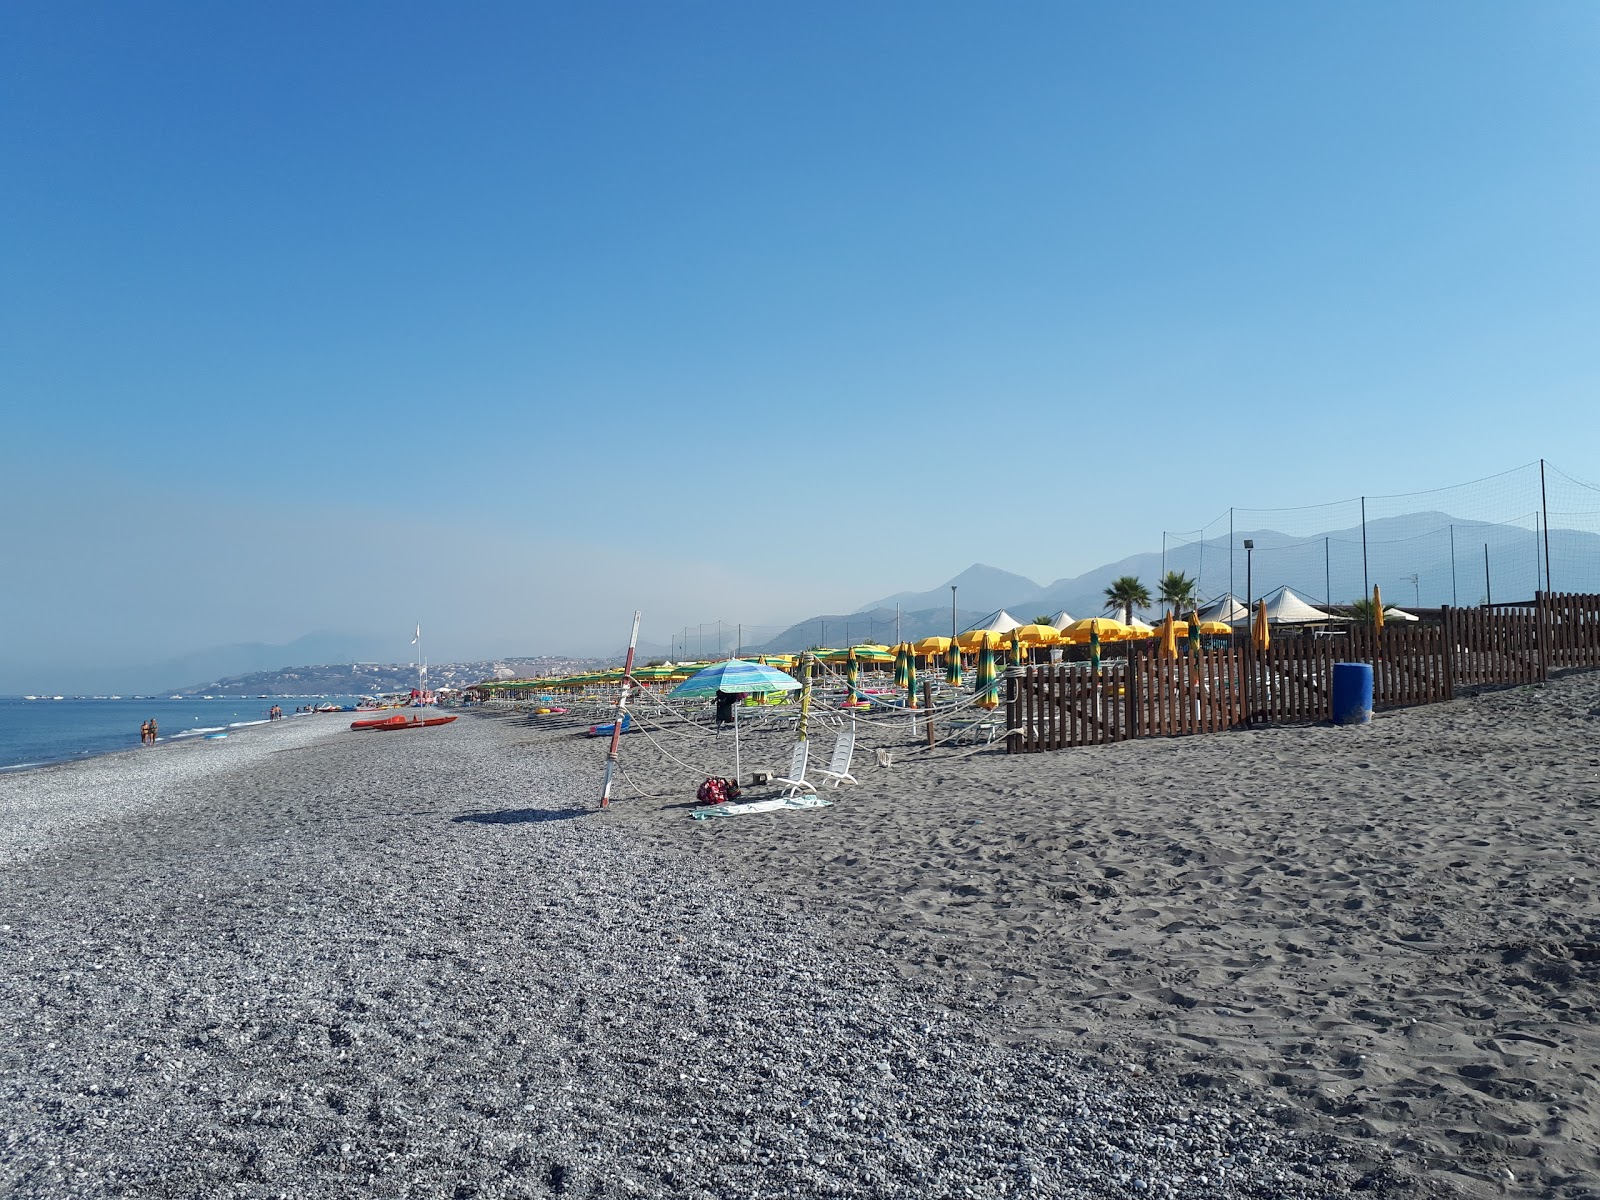 Foto de Spiaggia di Scalea II com areia cinza superfície